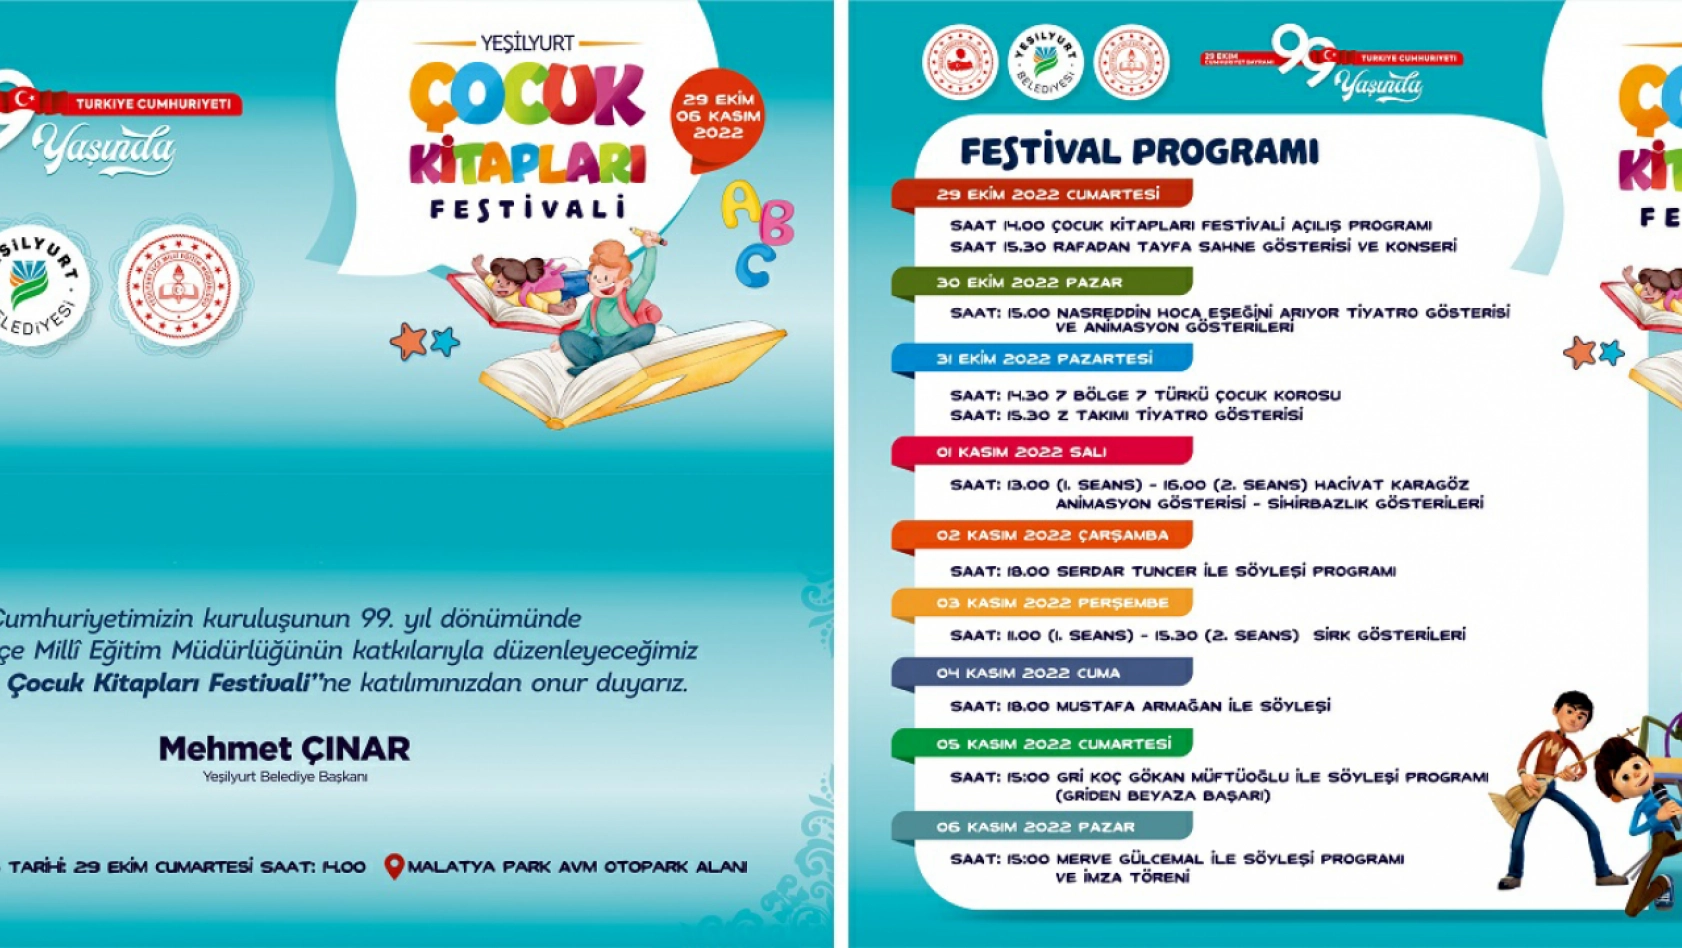 Malatya'da 'Yeşilyurt Çocuk Kitapları' Festivali Düzenlenecek